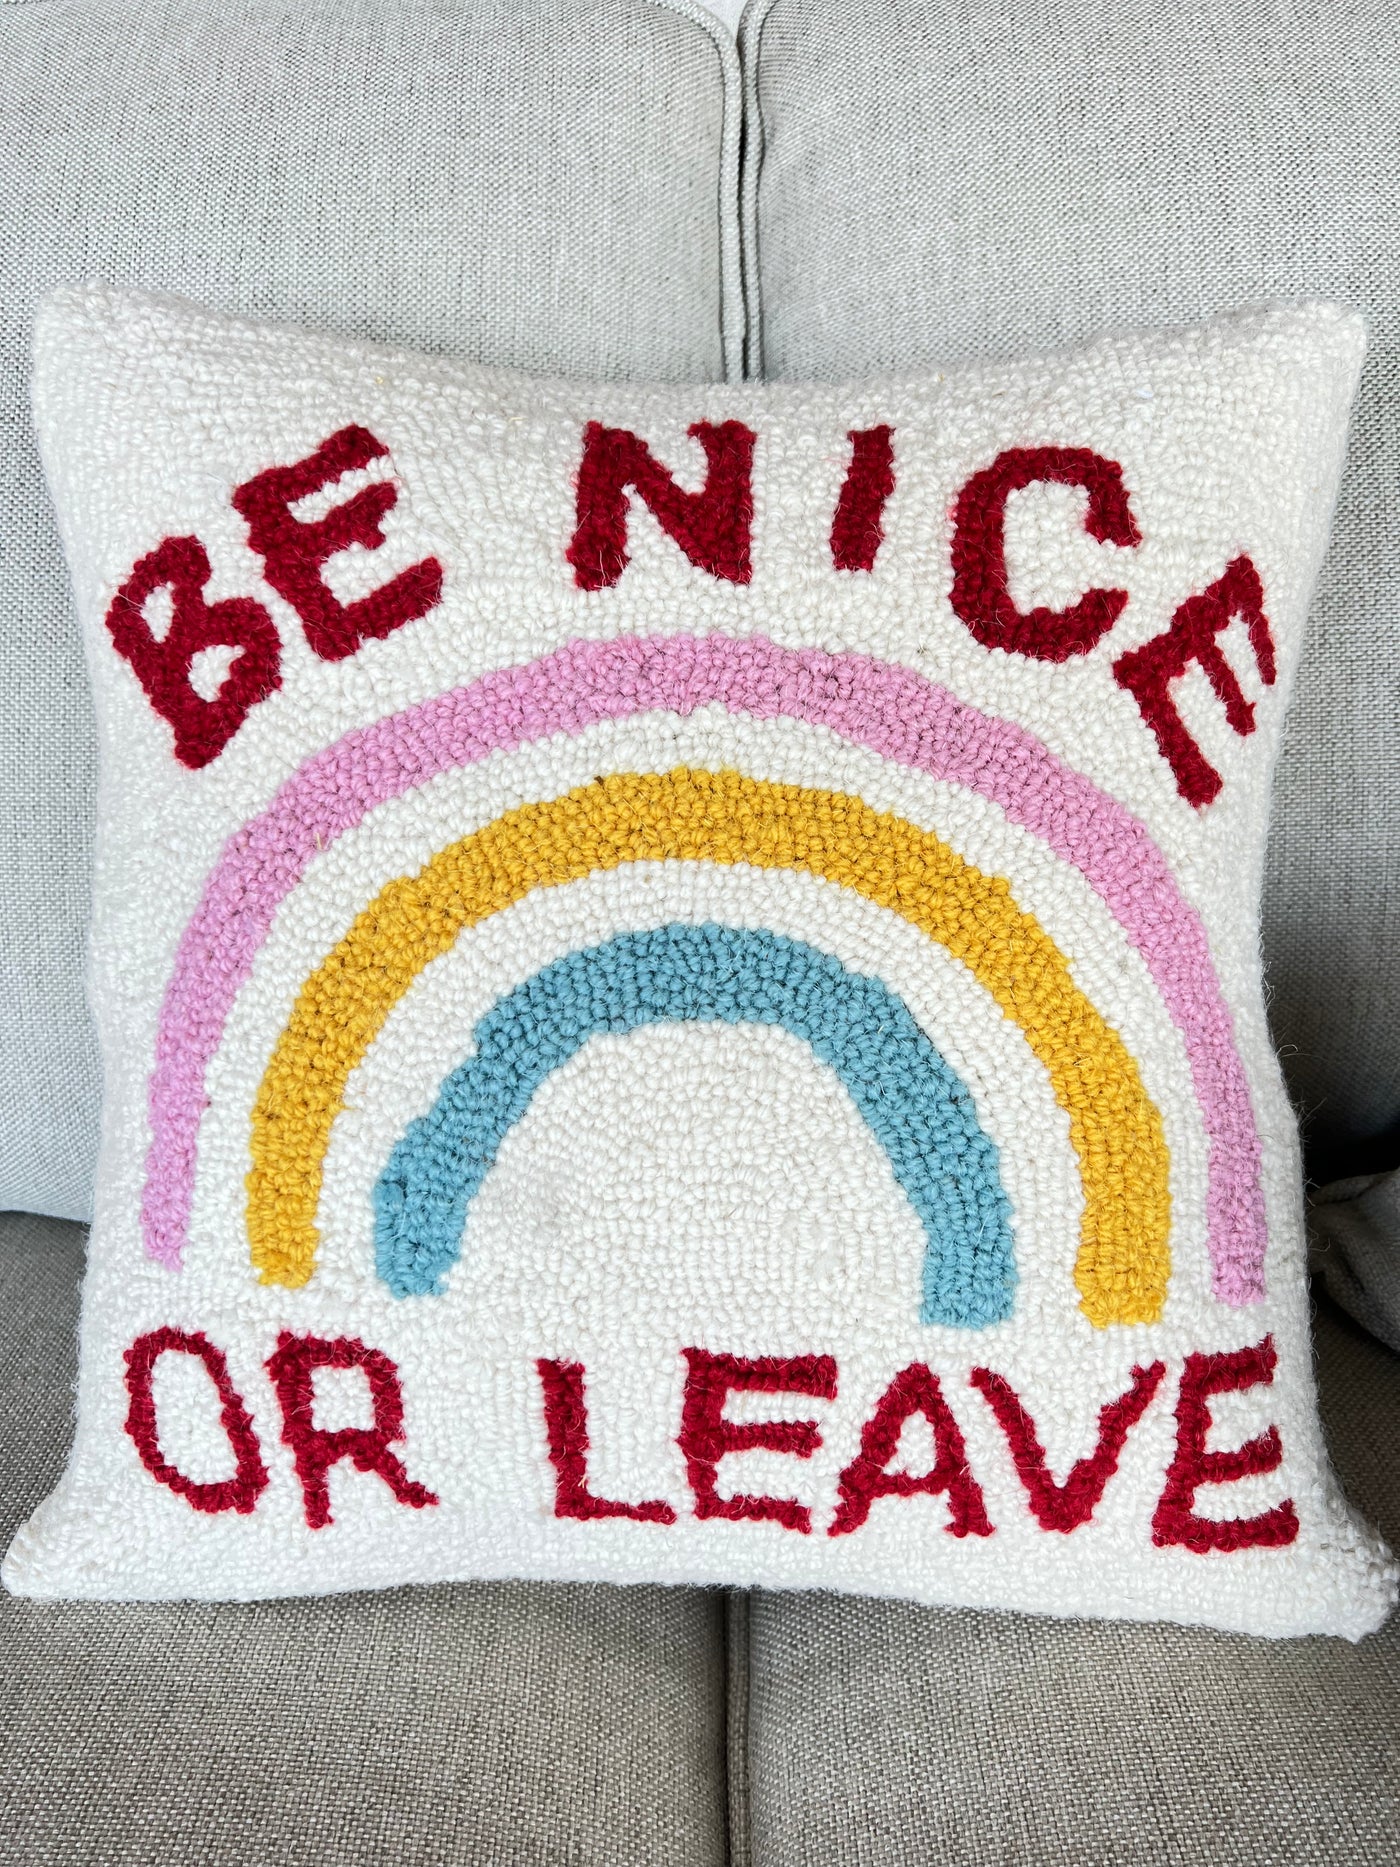 Be Nice pillow